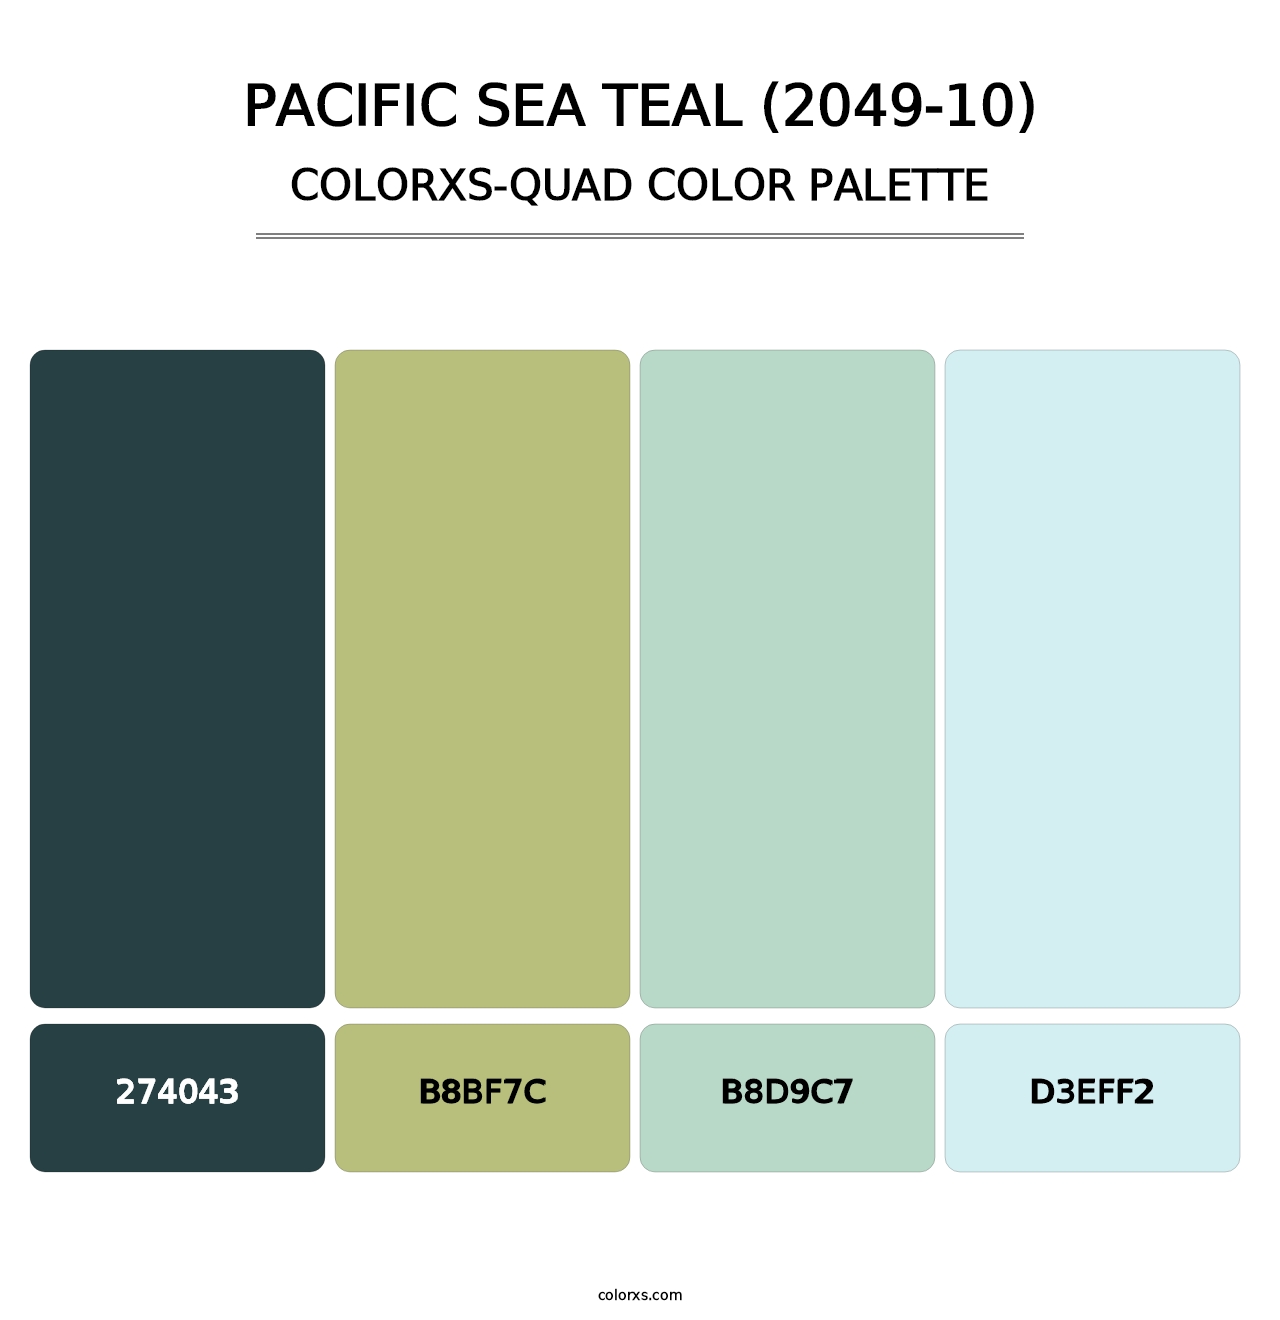 Pacific Sea Teal (2049-10) - Colorxs Quad Palette